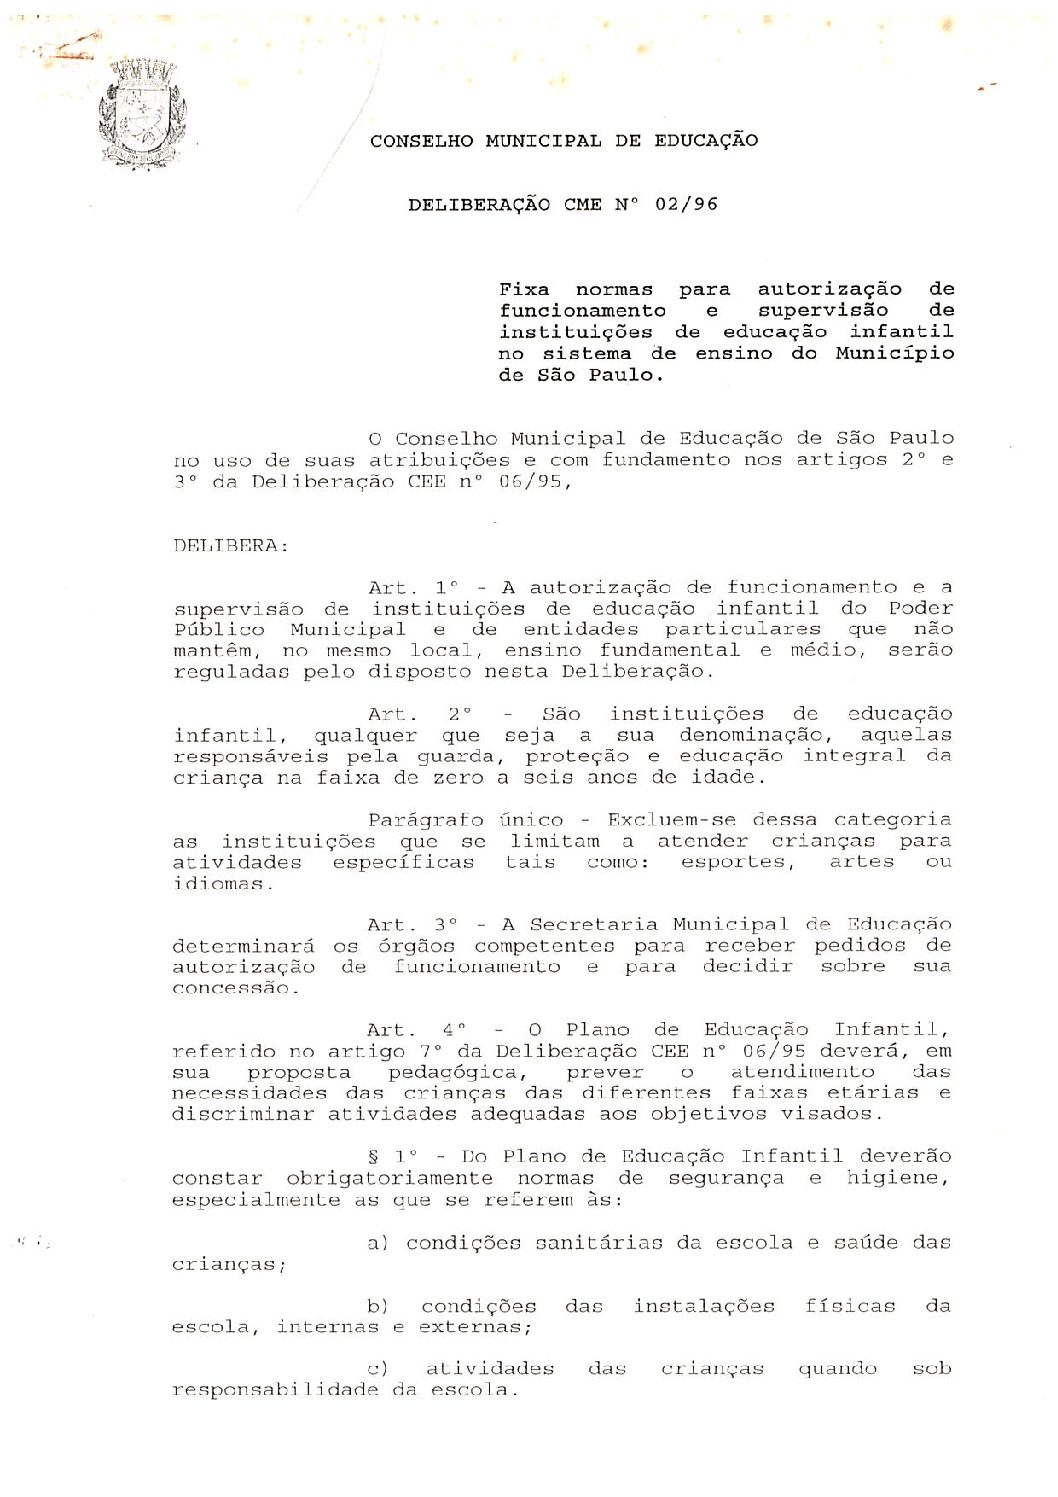 Deliberação CME nº 02/1996 - Fixa normas para autorização de funcionamento e supervisão de Instituições de Educação Infantil no Sistema de Ensino do município de São Paulo